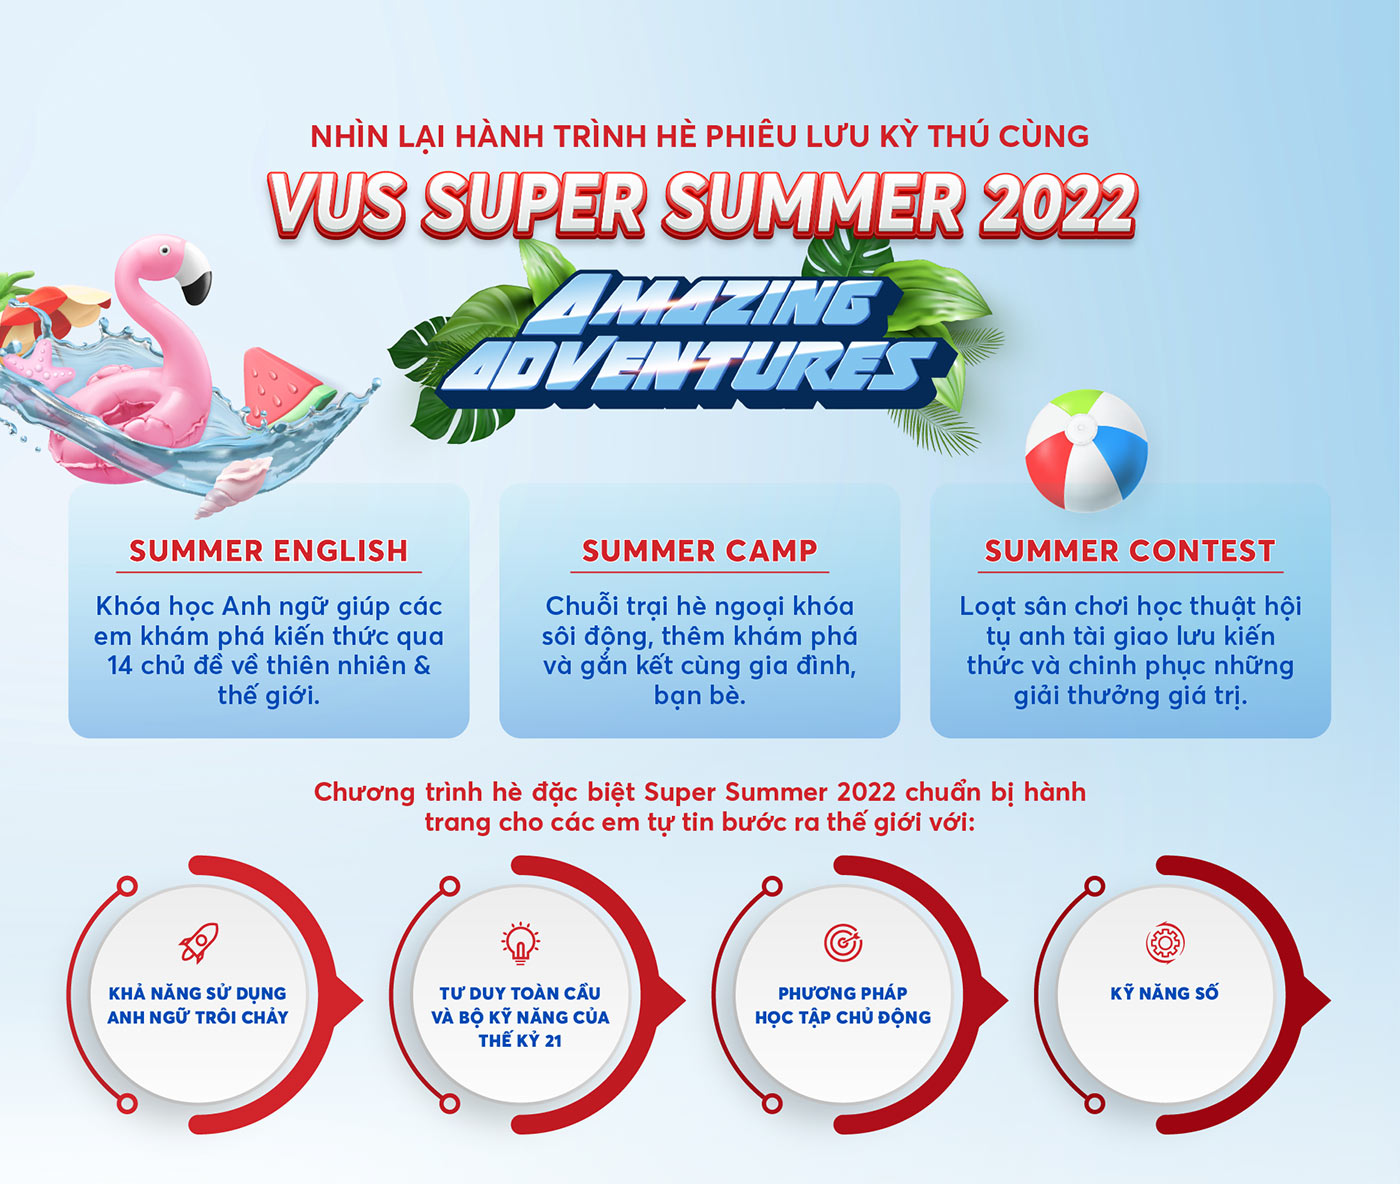 Nhìn lại hành trình hè phiêu lưu kỳ thú cùng VUS Super Summer 2022 - Amazing Adventures - Ảnh 1